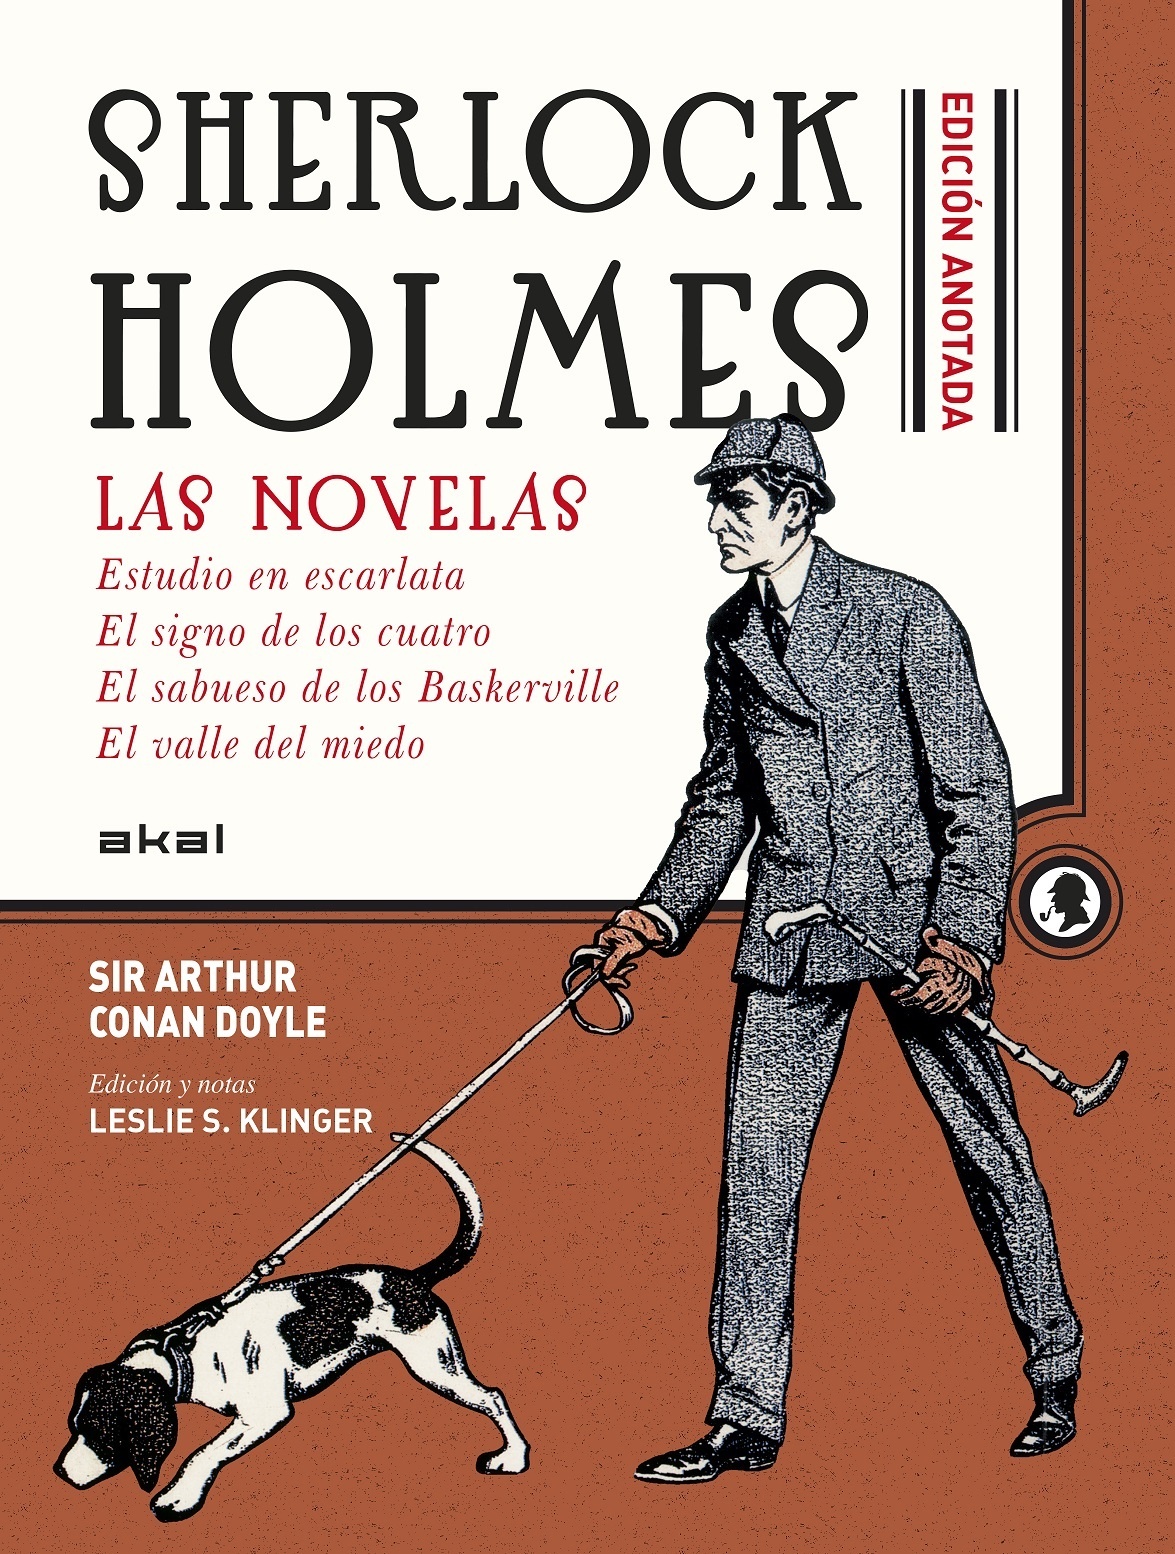 Sherlock Holmes anotado. Las novelas. 